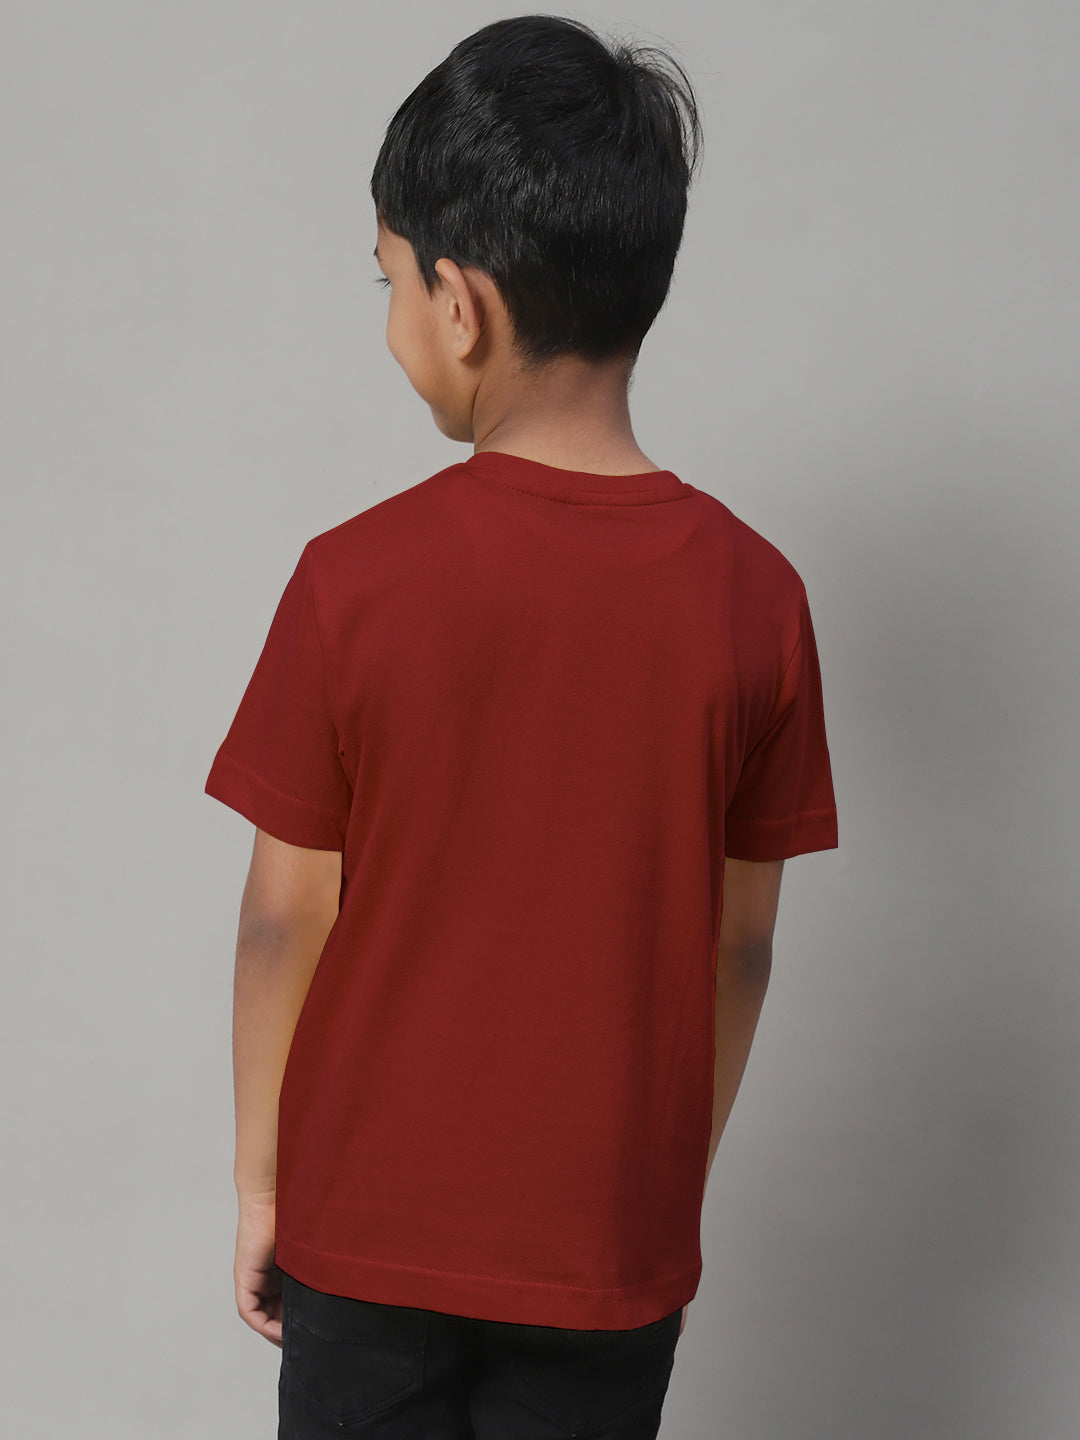 Boys Spiderman Half Sleeves Printed T-Shirt - Friskers